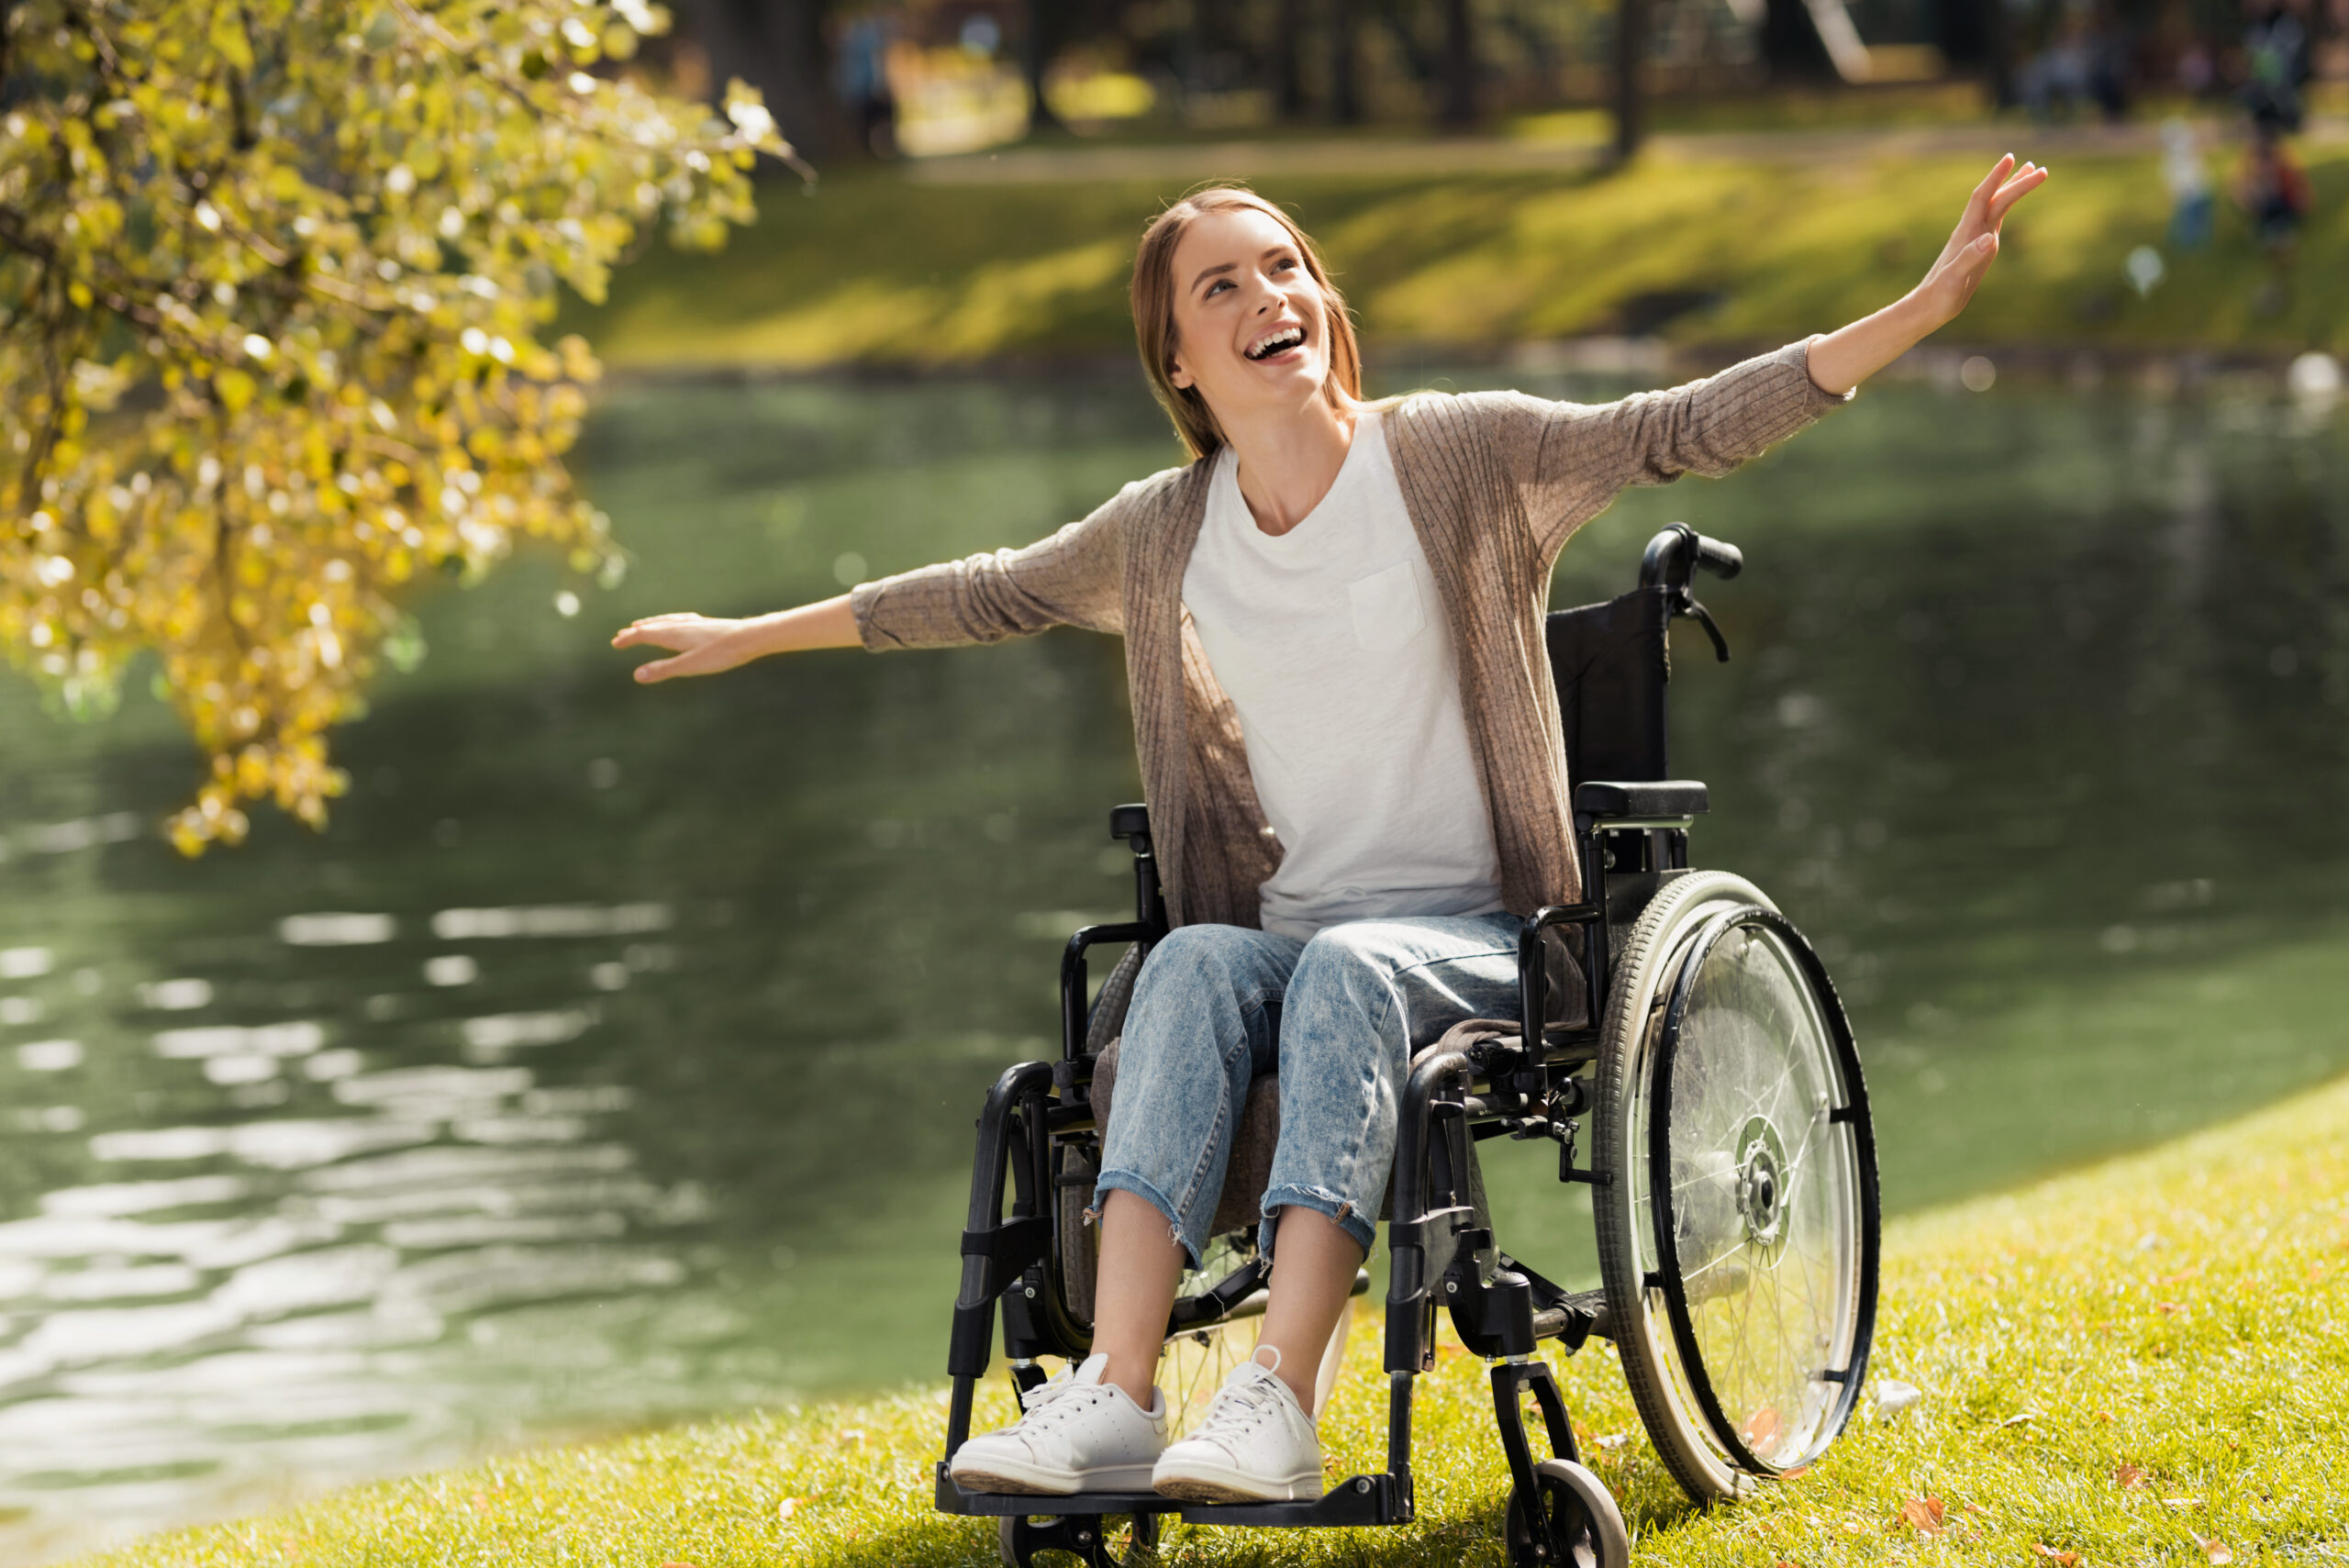 Komisja Europejska rozpoczęła pierwszą procedurę legislacyjną dotyczącą osób z niepełnosprawnościami. 6 września 2023 r. zaproponowała wprowadzenie Europejskiej Karty Niepełnosprawności oraz ulepszenie obecnej Europejskiej Karty Parkingowej dla osób z niepełnosprawnościami.